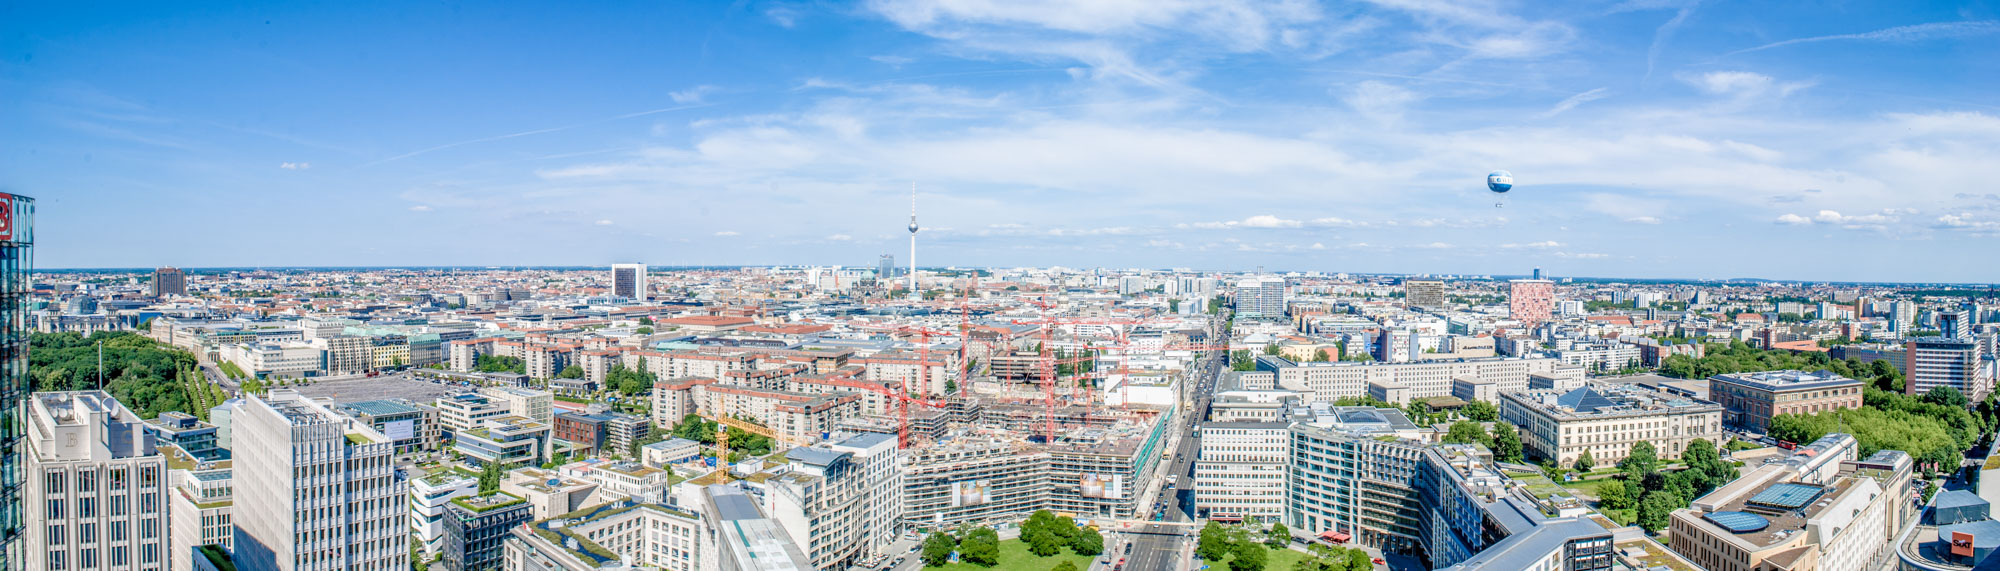 Panorama über Berlin